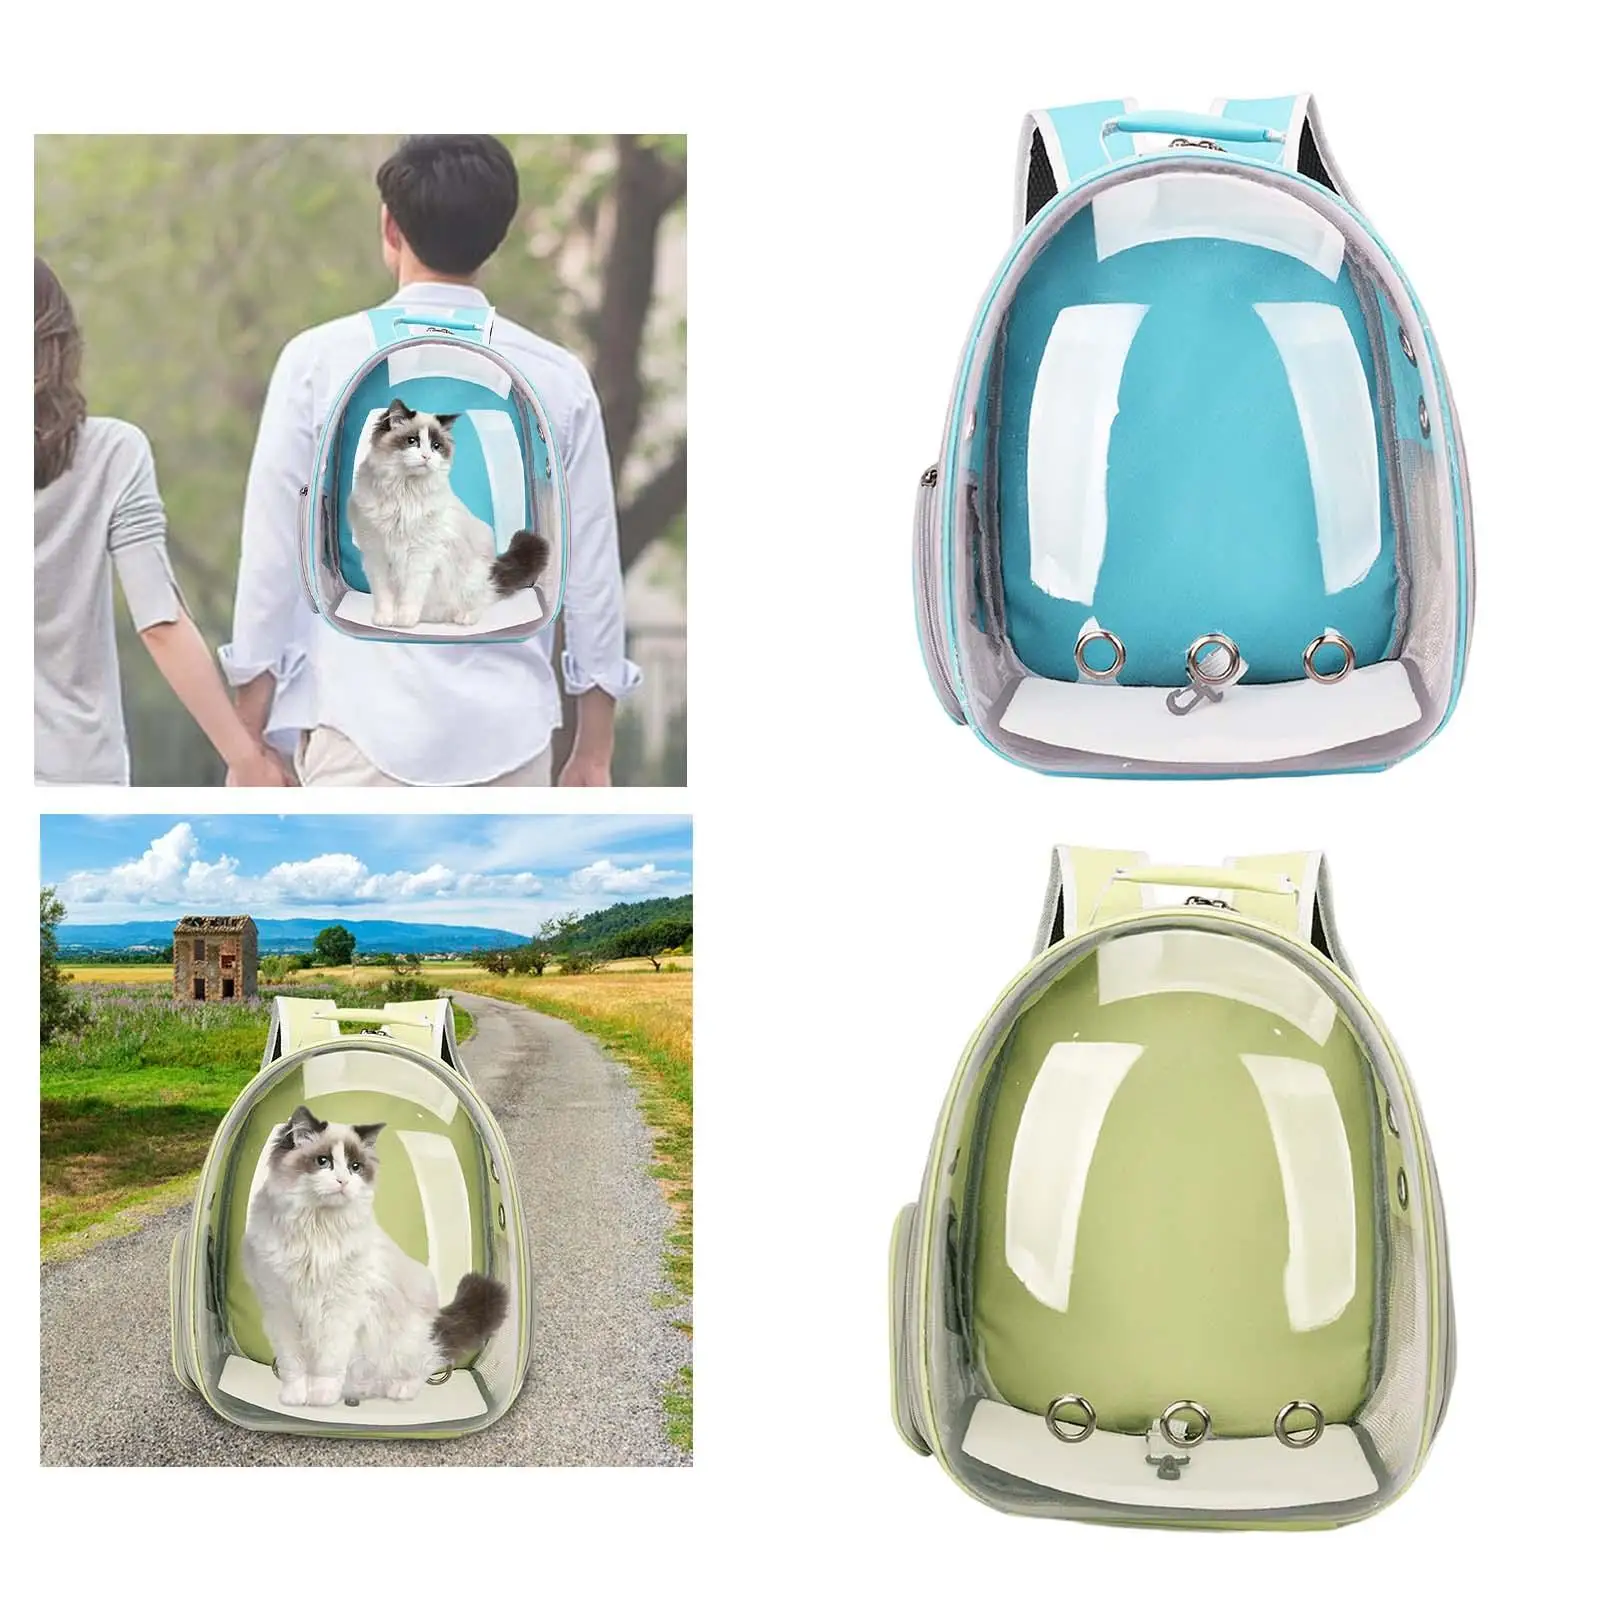 Pet Cat Carrier Backpack Soft Breathable Adjustable Shoulder Strap Tote Pet Travel Bag for Walking Hiking Travel Outdoor Use